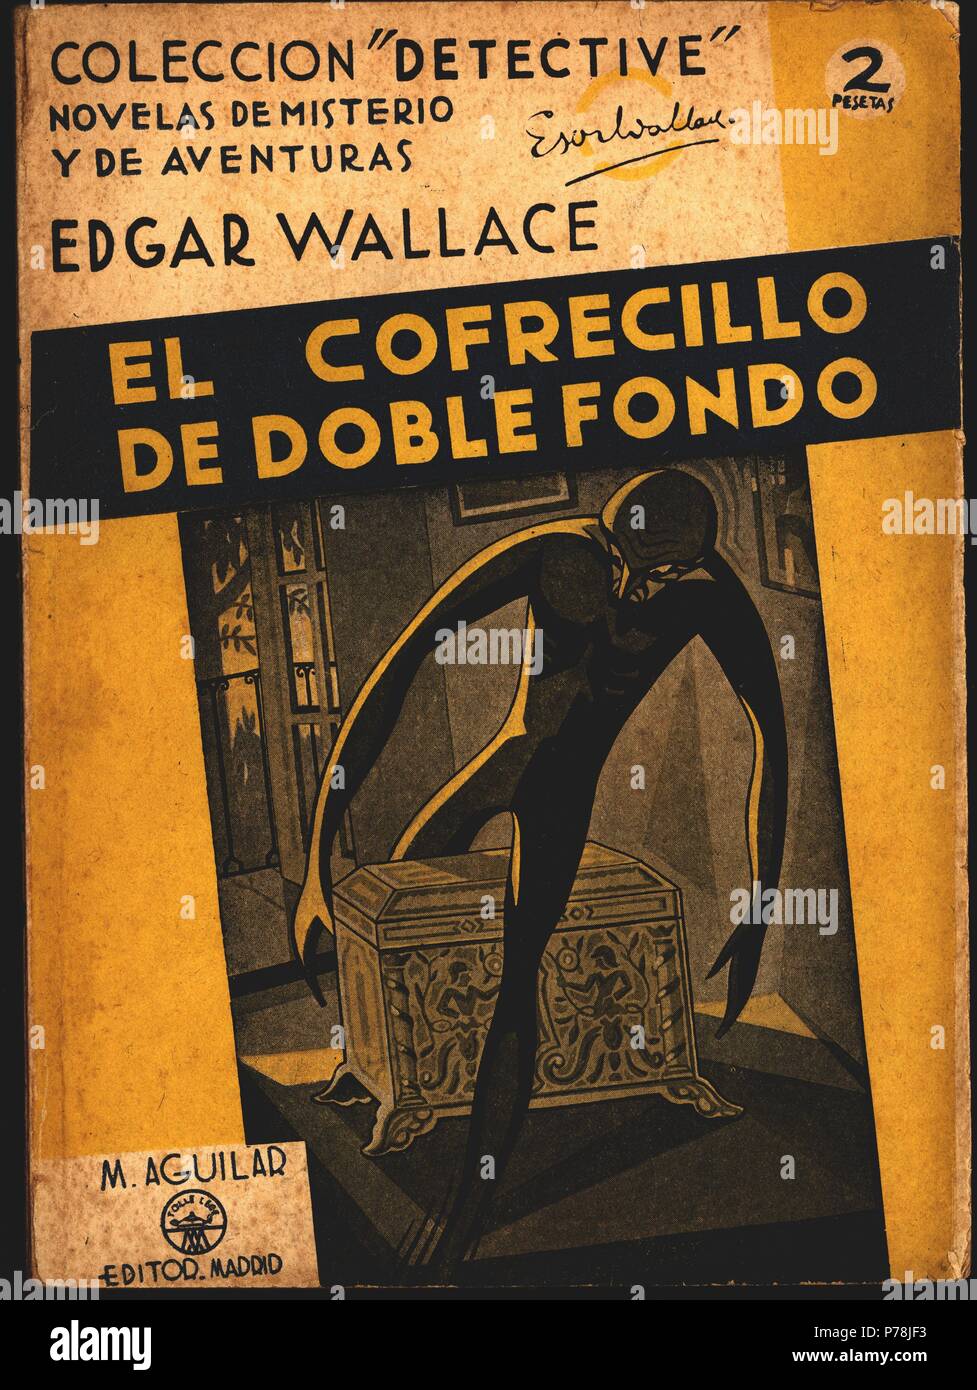 Novela policíaca 'El cofrecillo de Doble fondo', de Edgar Wallace. Madrid, redaktionelle Aguilar, 1940. Stockfoto